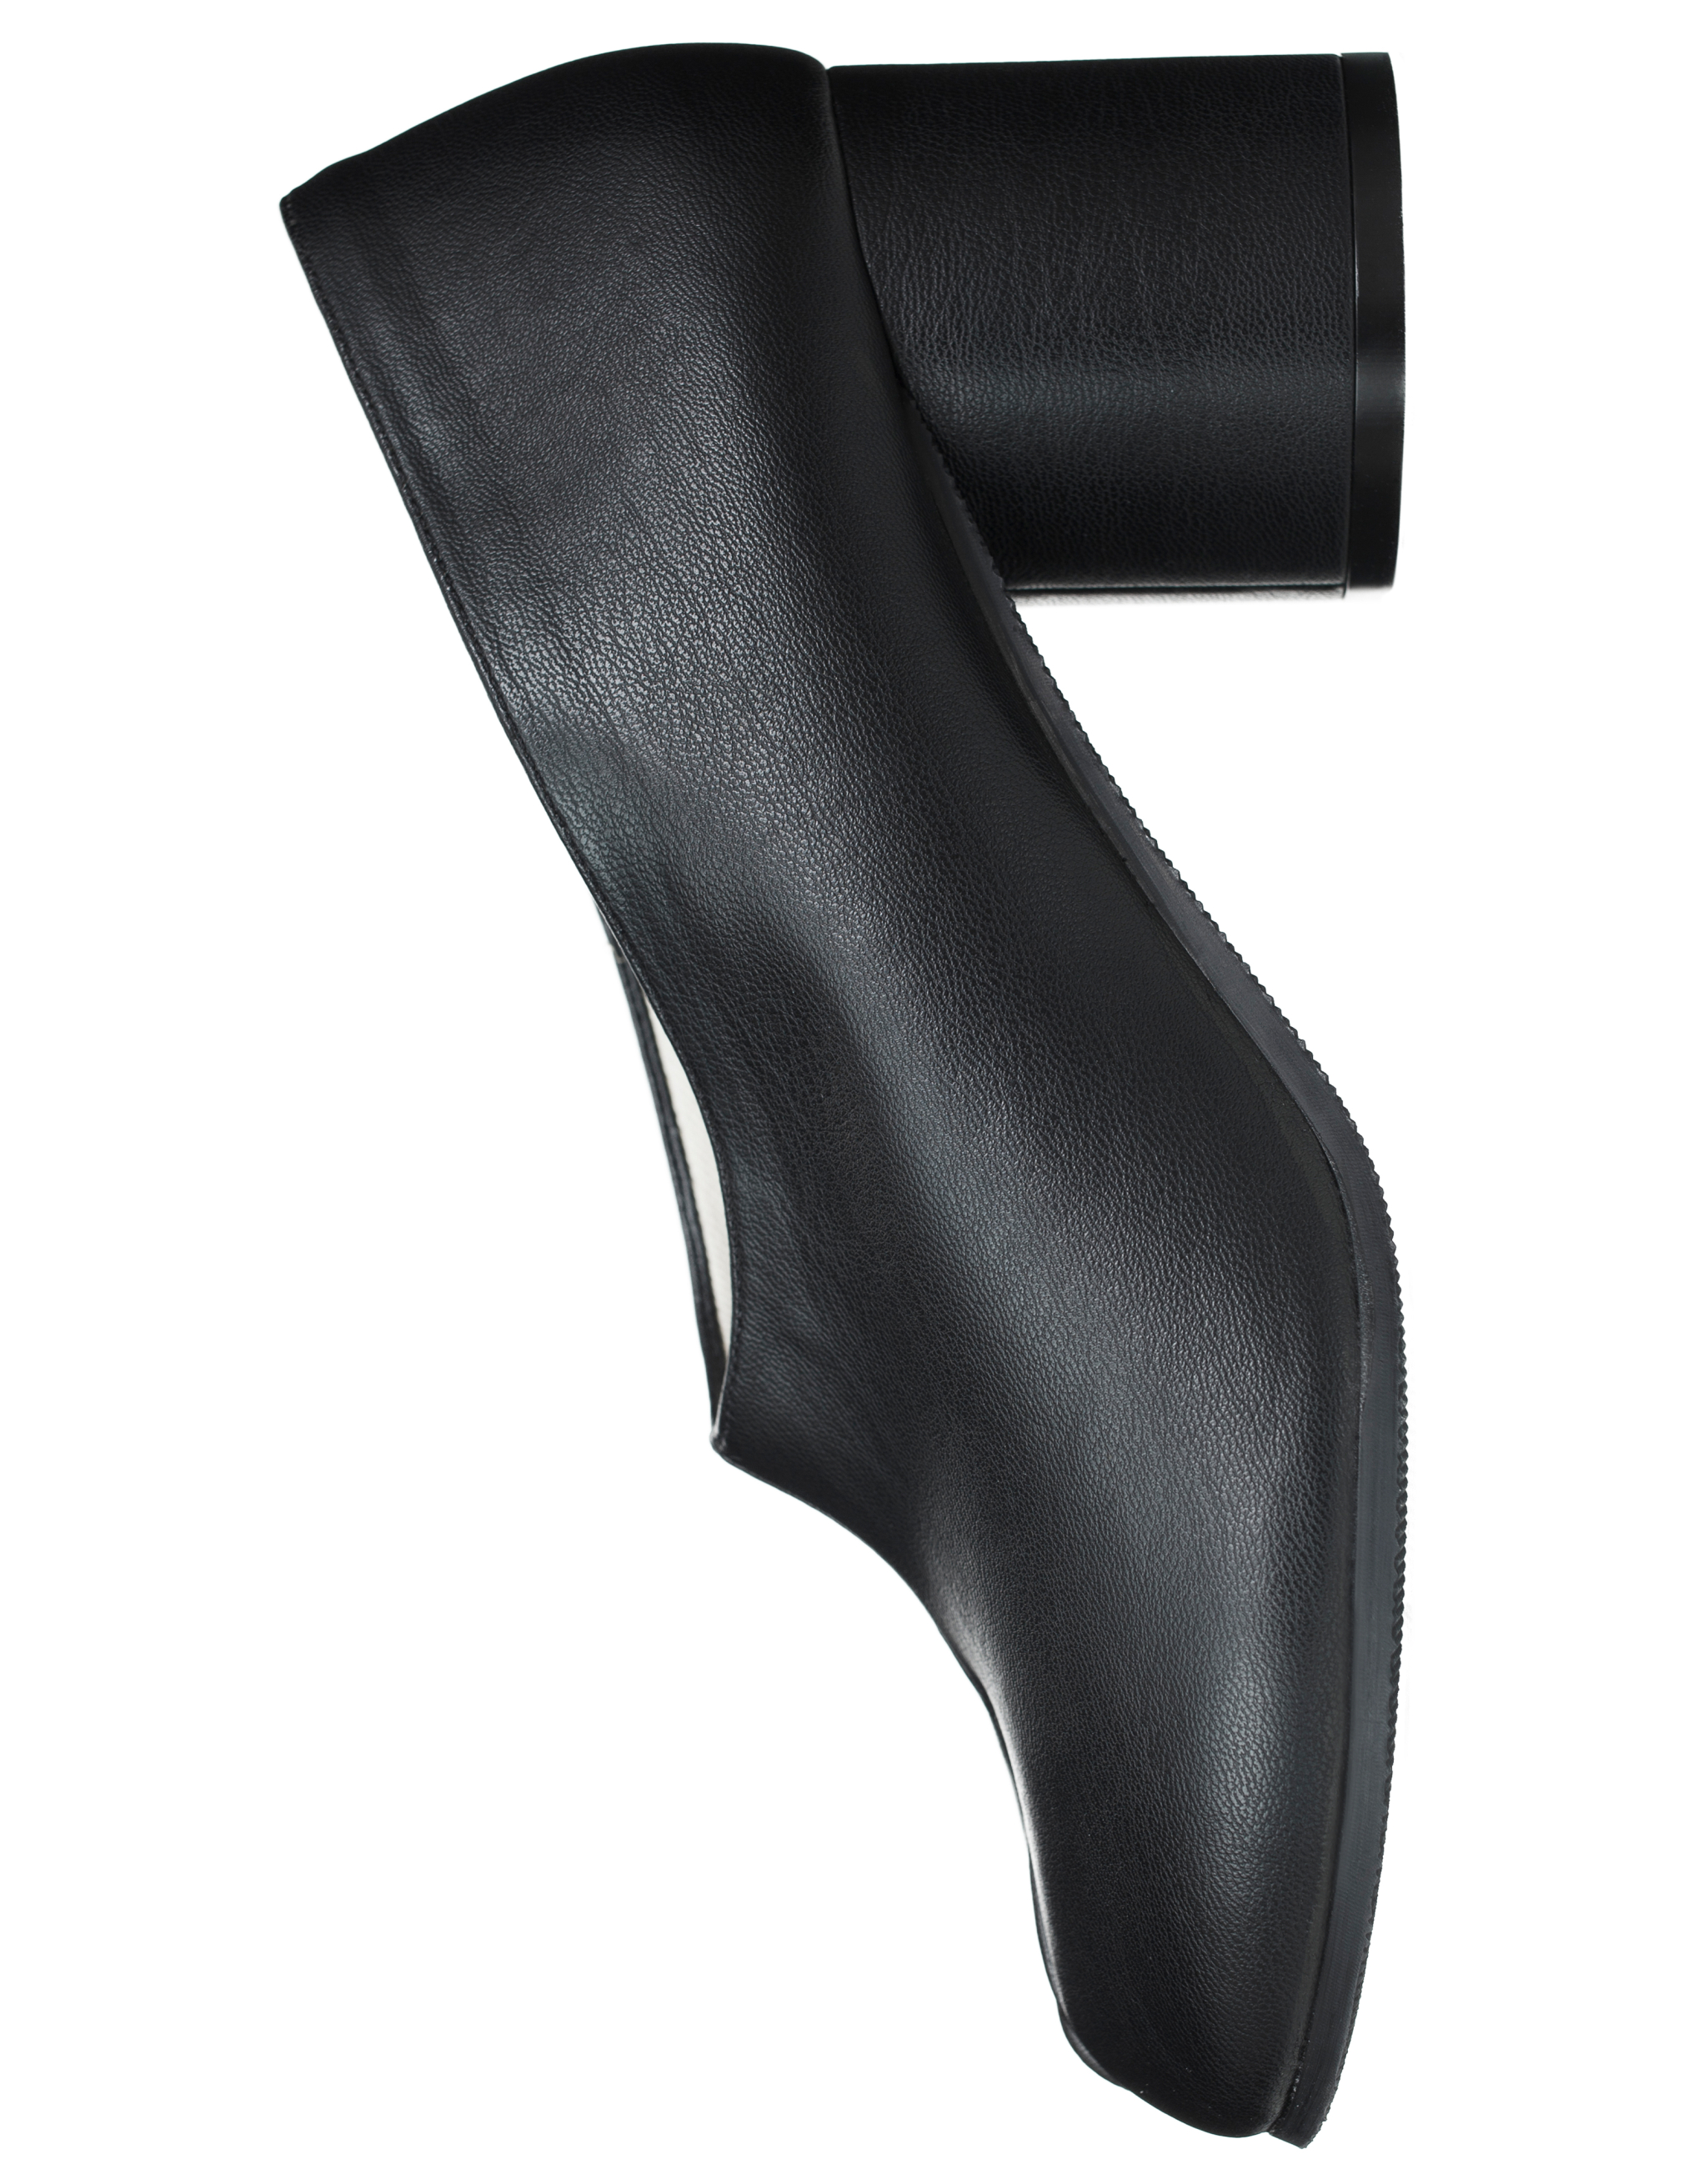 Кожаные туфли Tabi Maison Margiela S58WL0221/P4325/T8013, размер 39;38